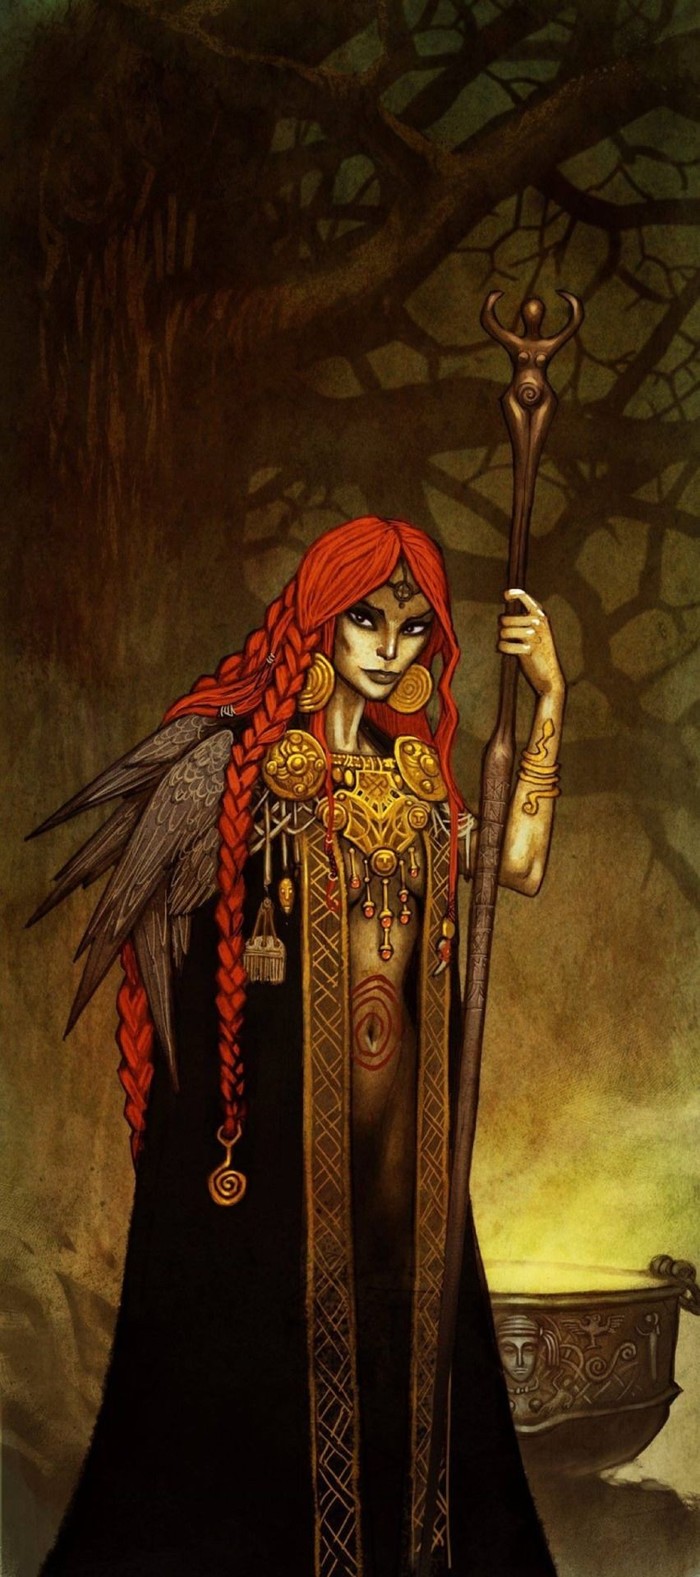 Freya - Art, Images, Scandinavian mythology, Freya, Goddess, Mythology, Longpost, Johan Egerkrans